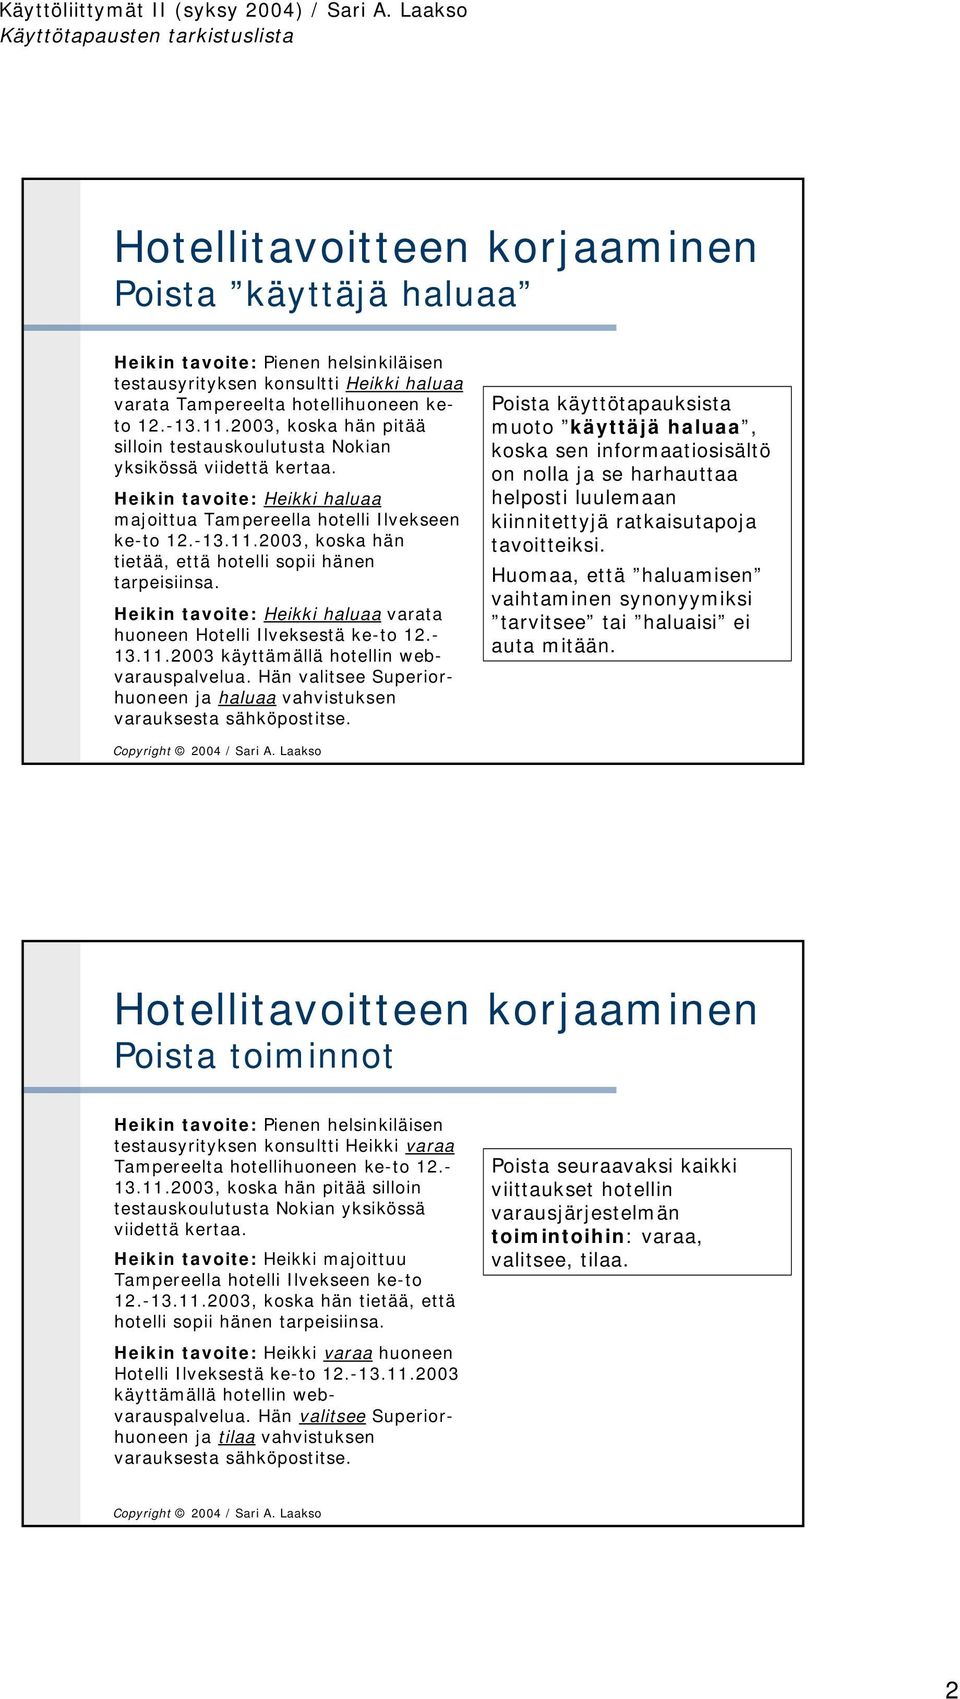 2003, koska hän tietää, että hotelli sopii hänen tarpeisiinsa. Heikin tavoite: Heikki haluaa varata huoneen Hotelli Ilveksestä ke-to 12.- 13.11.2003 käyttämällä hotellin webvarauspalvelua.